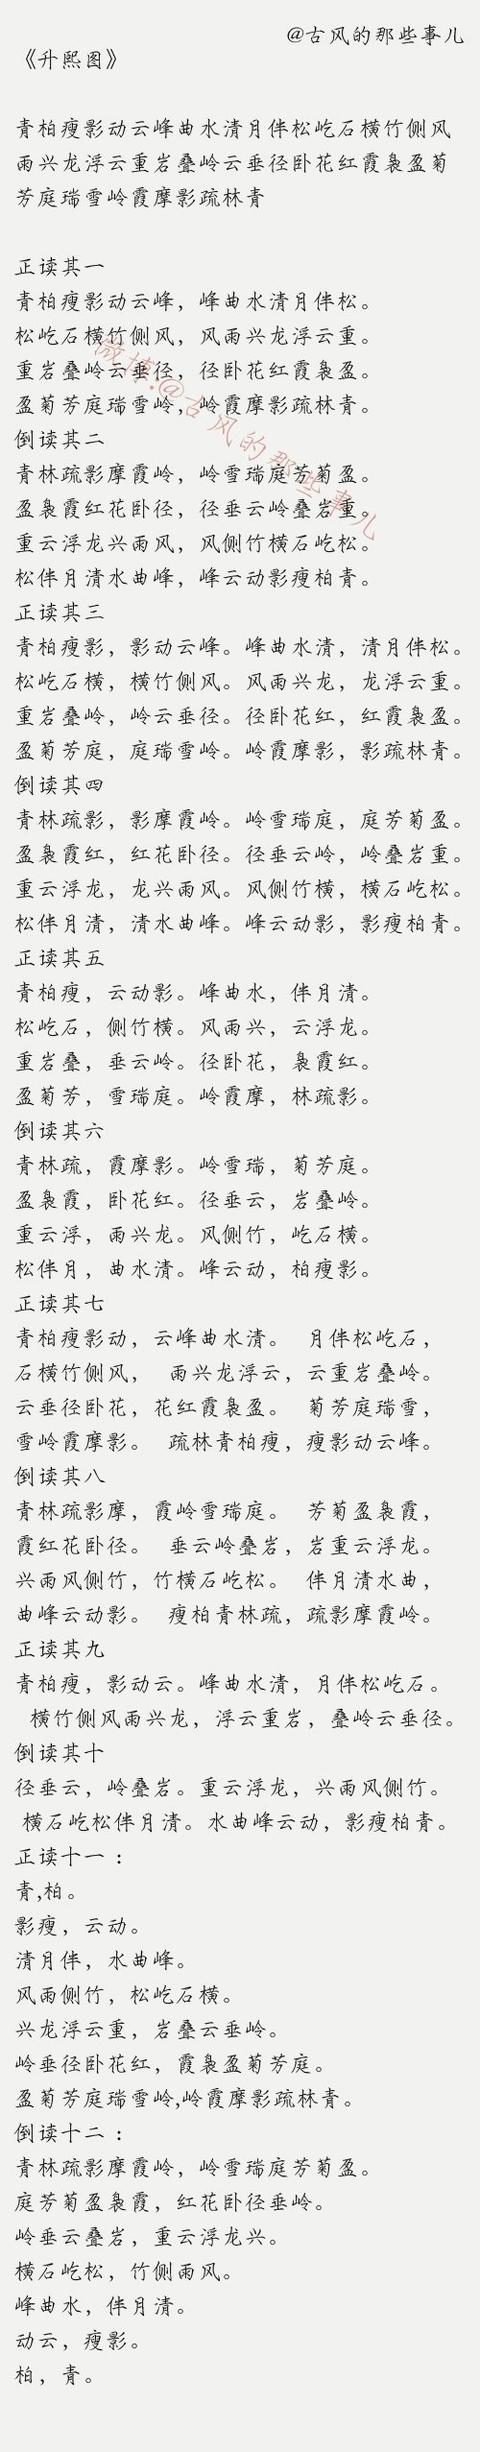 关于汉字的古诗大全_关于汉字的古诗大全五言绝句  第9张